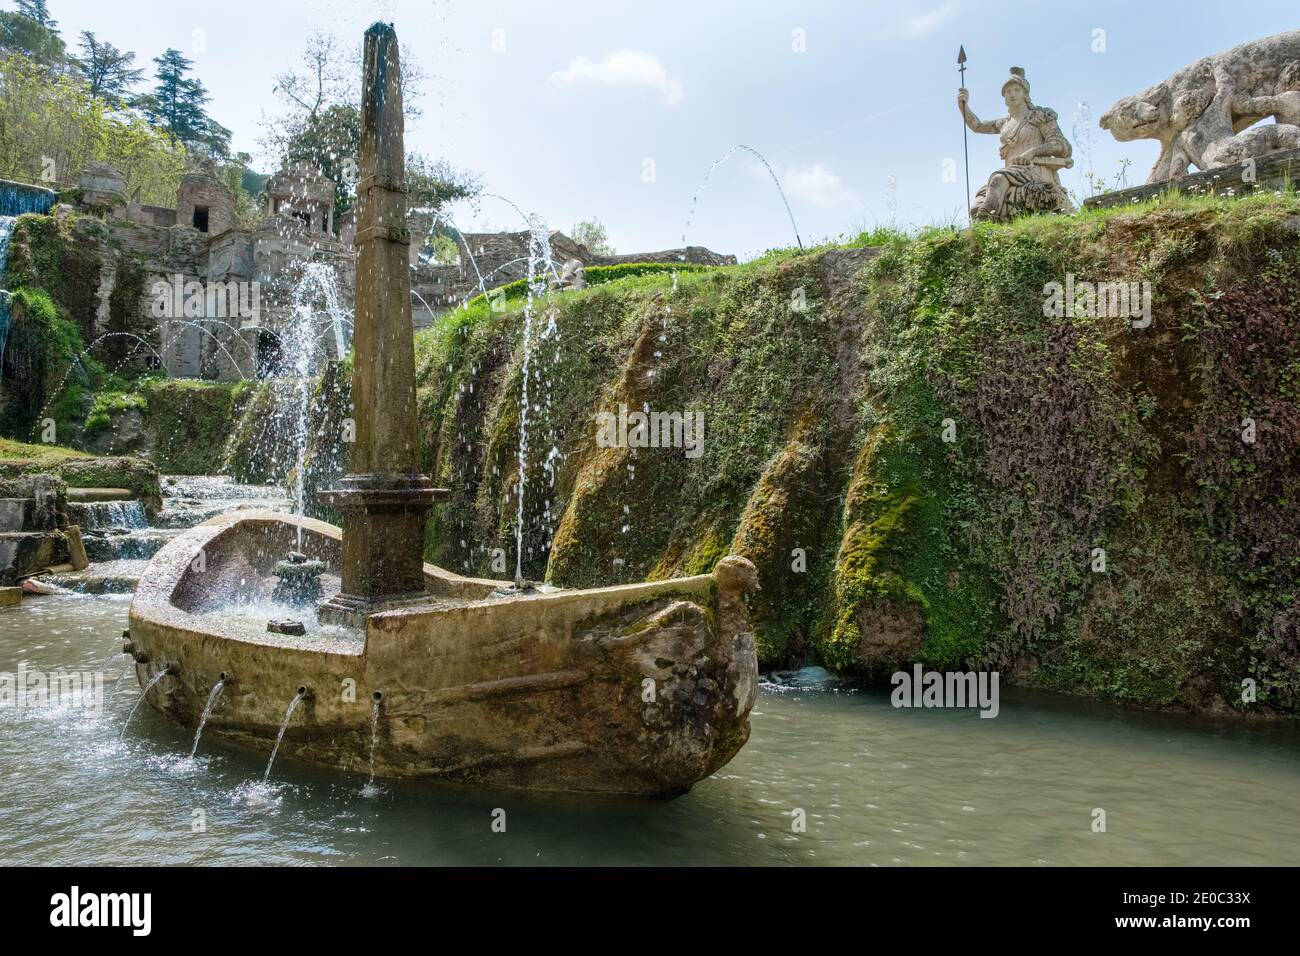 The Fountain of Rometta (Fontana di Rometta) designed by PIrro Ligorio in the garden of Villa d'Este, Tivoli, Italy Stock Photo